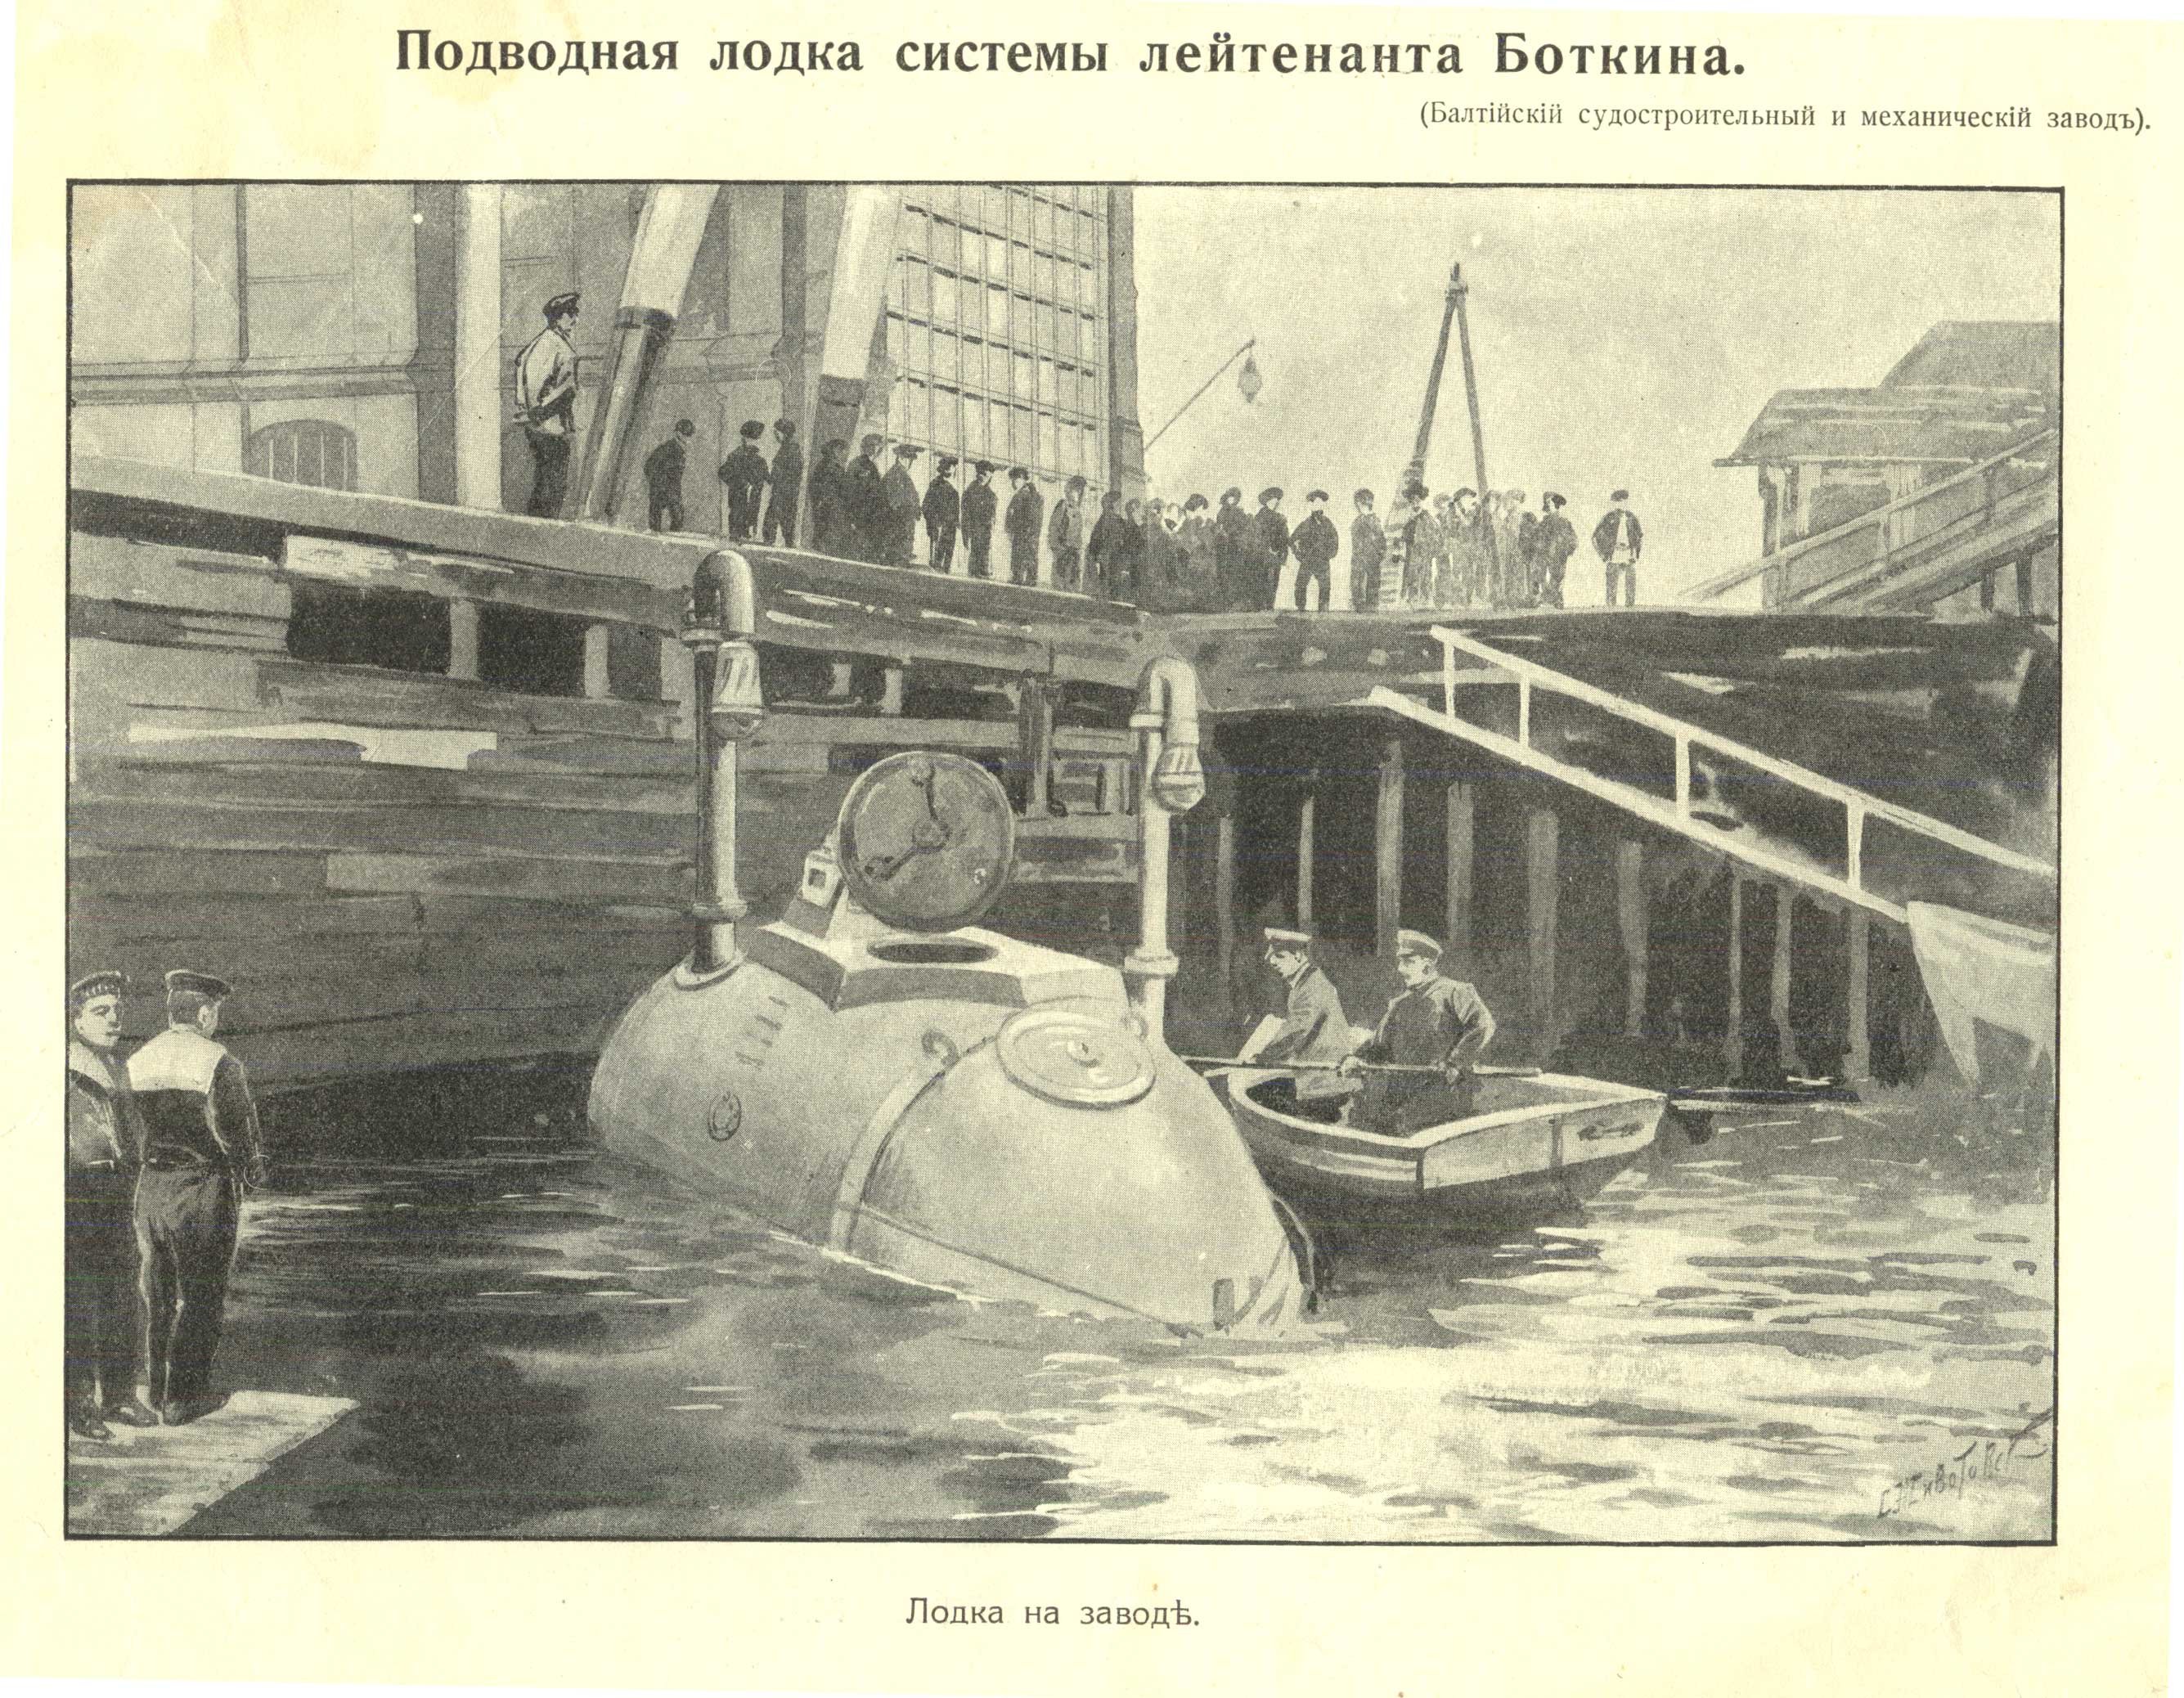 Первую пл. Подводная лодка Джевецкого. Первая подводная лодка в России 1904. Первая подводная лодка в России. Первая подводная лодка Джевецкого.